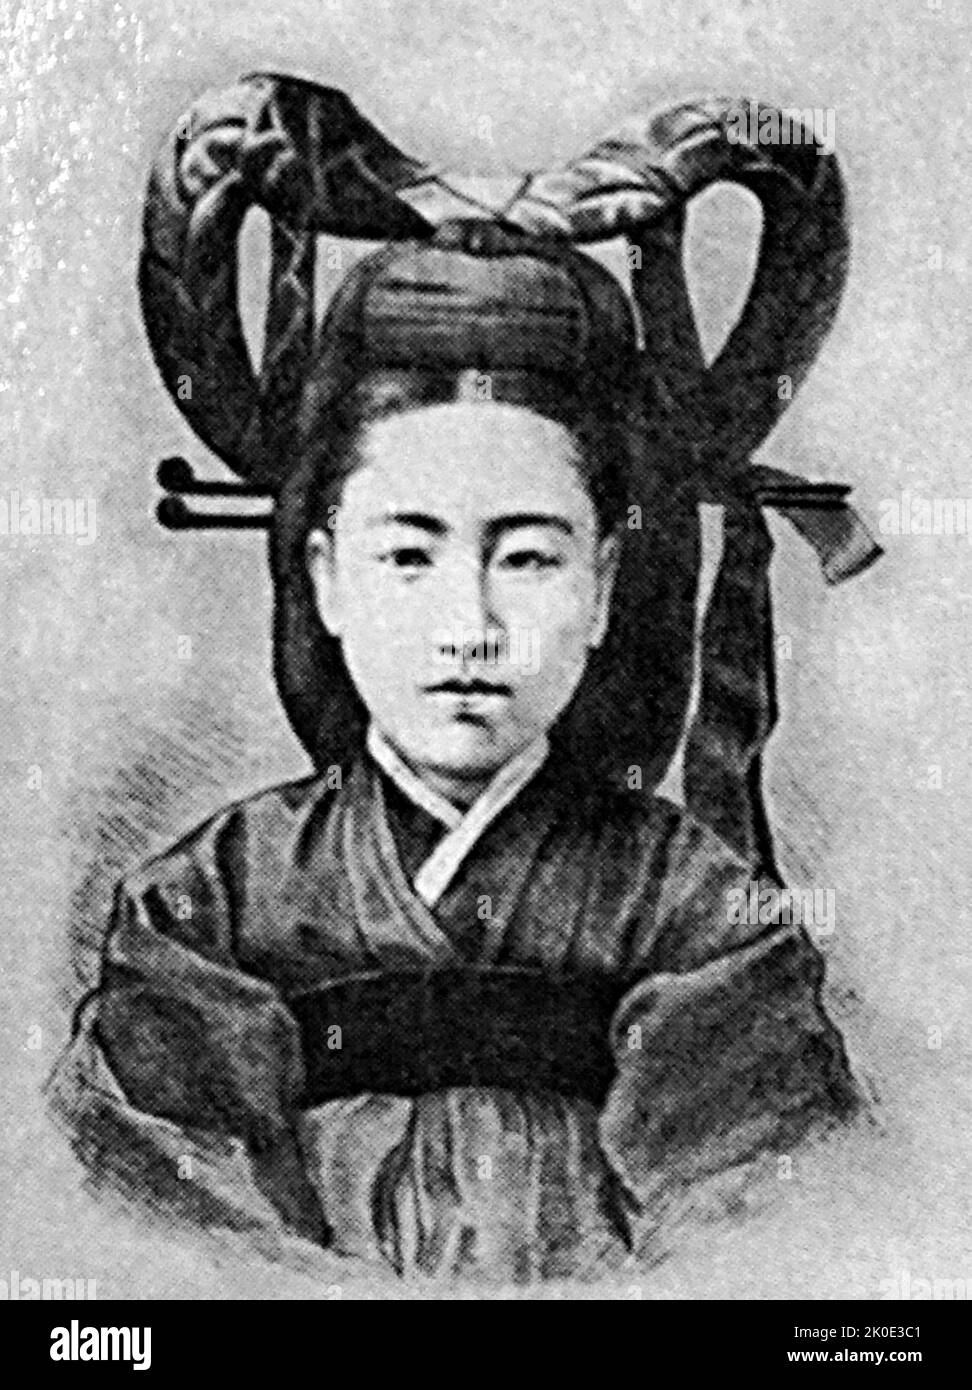 L'imperatrice Sunmyeonghyo (1872 - 1904), del clan Yeoheung min, fu la prima moglie e principessa Consorte del principe ereditario Yi Cheok, che in seguito divenne l'ultimo imperatore dell'Impero coreano. Foto Stock